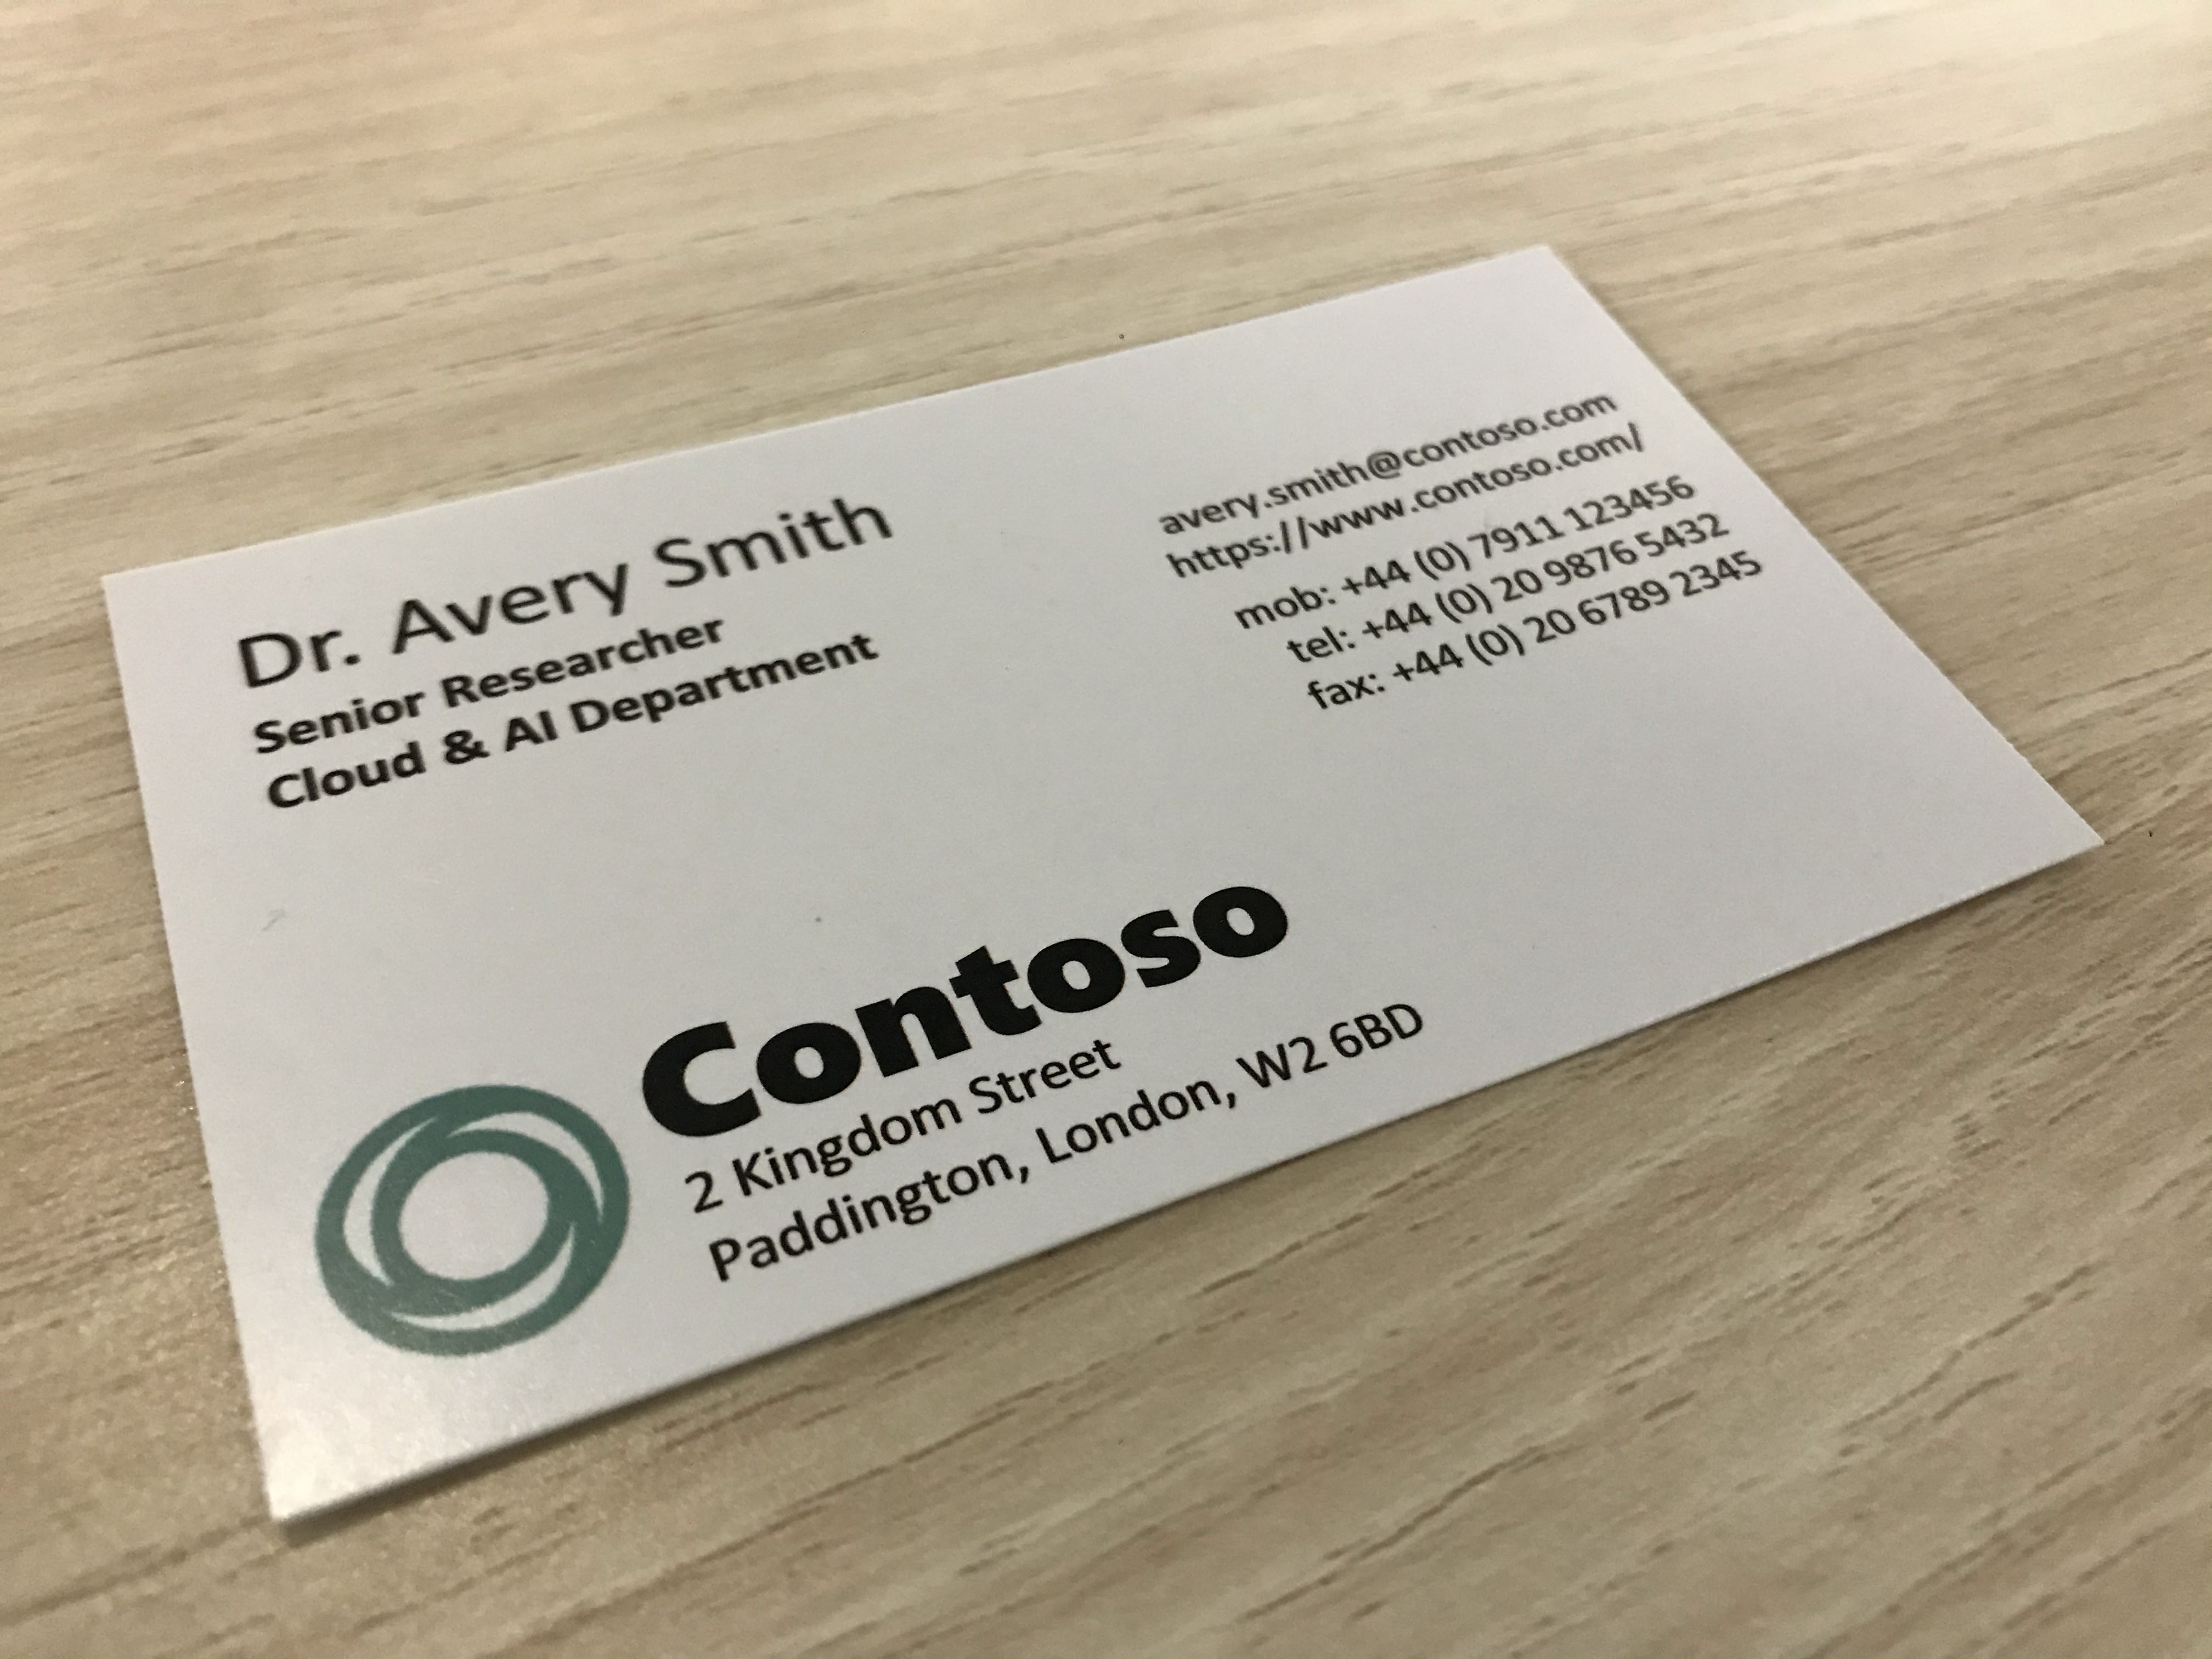 Contoso という名前の会社の名刺を示す写真。